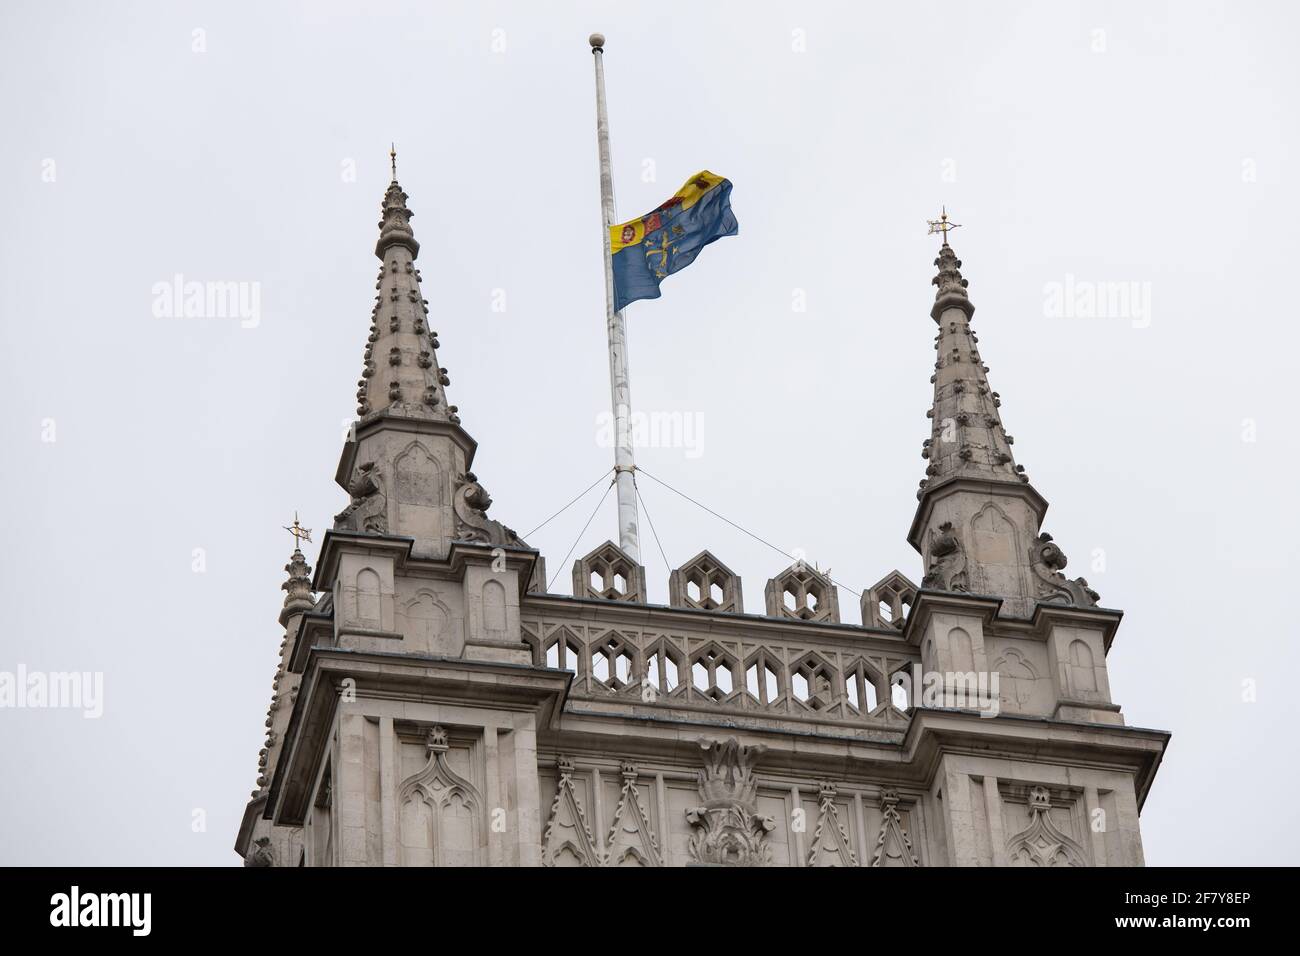 Londres, Reino Unido. 10 de abril de 2021. La Bandera de la Abadía vuela a media asta sobre la Abadía de Westminster, Londres, como una marca de respeto después de la muerte del Duque de Edimburgo ayer. Fecha de la foto: Sábado 10 de abril de 2021. El crédito de la foto debe ser: Matt Crossick/Empics/Alamy Live News Foto de stock